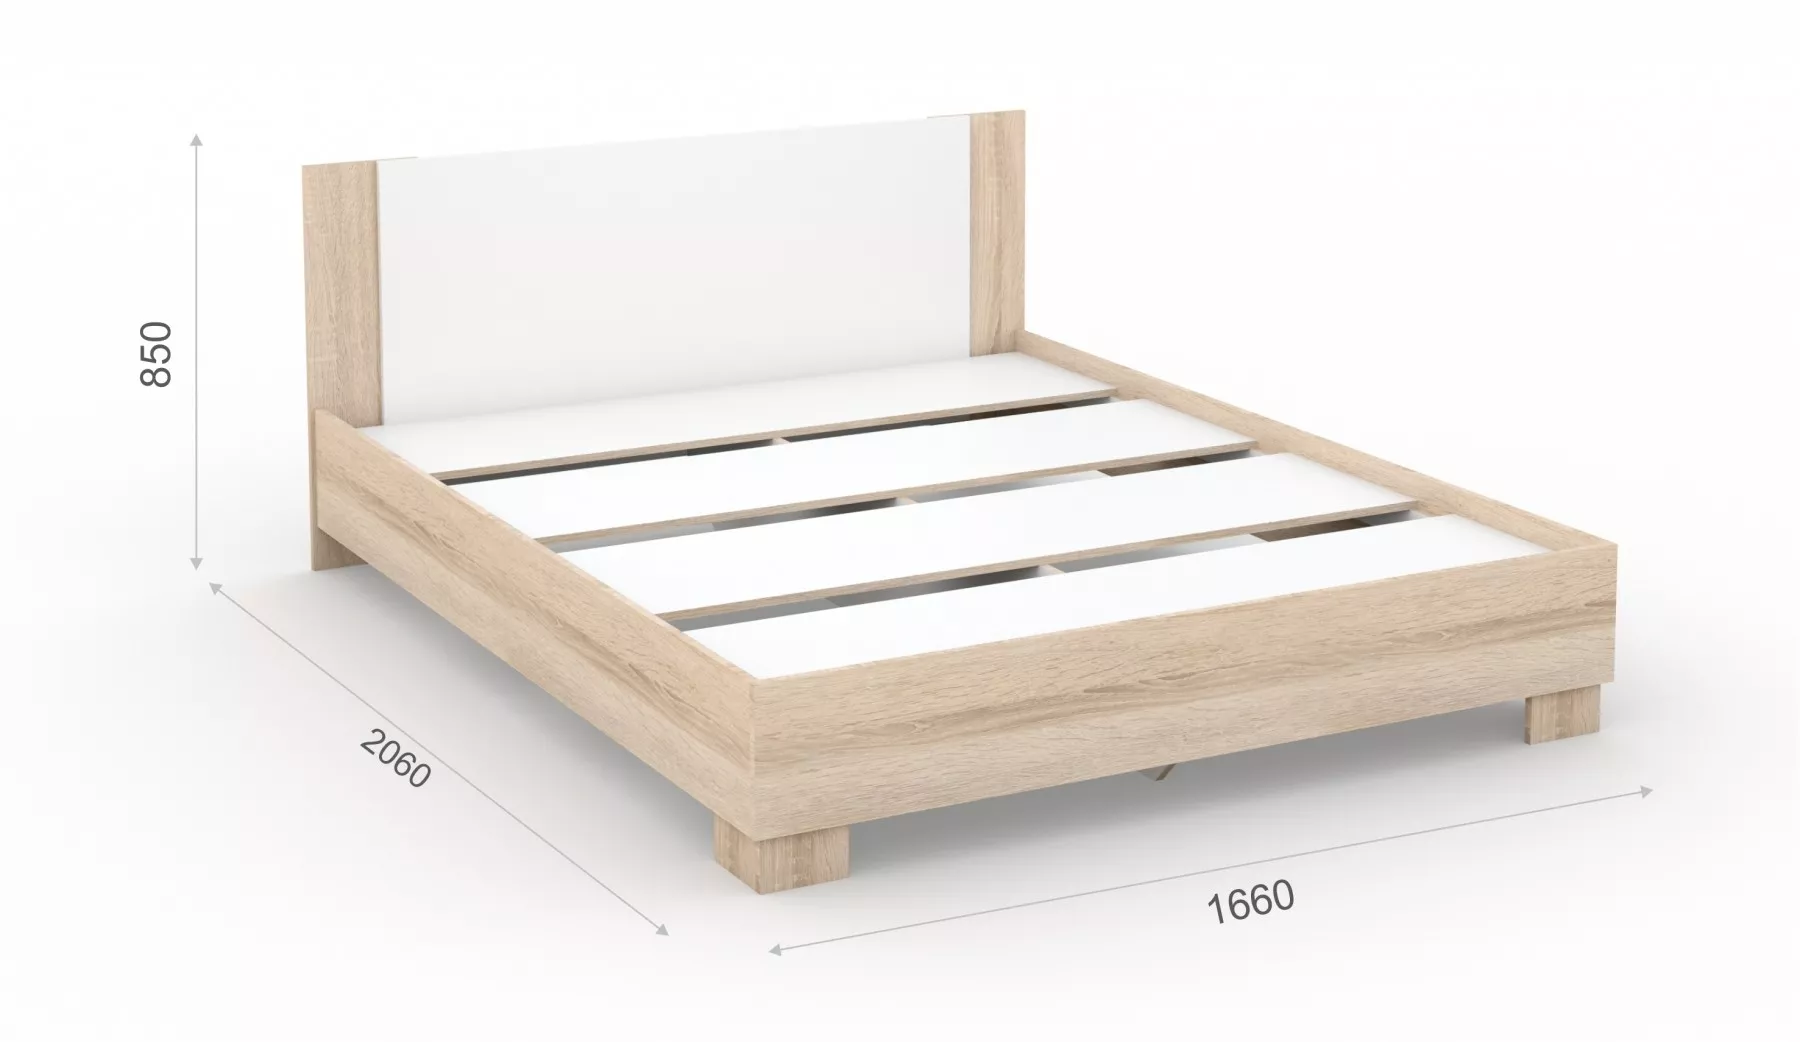 Двуспальная кровать Аврора 160 см Дуб Сонома / Белый